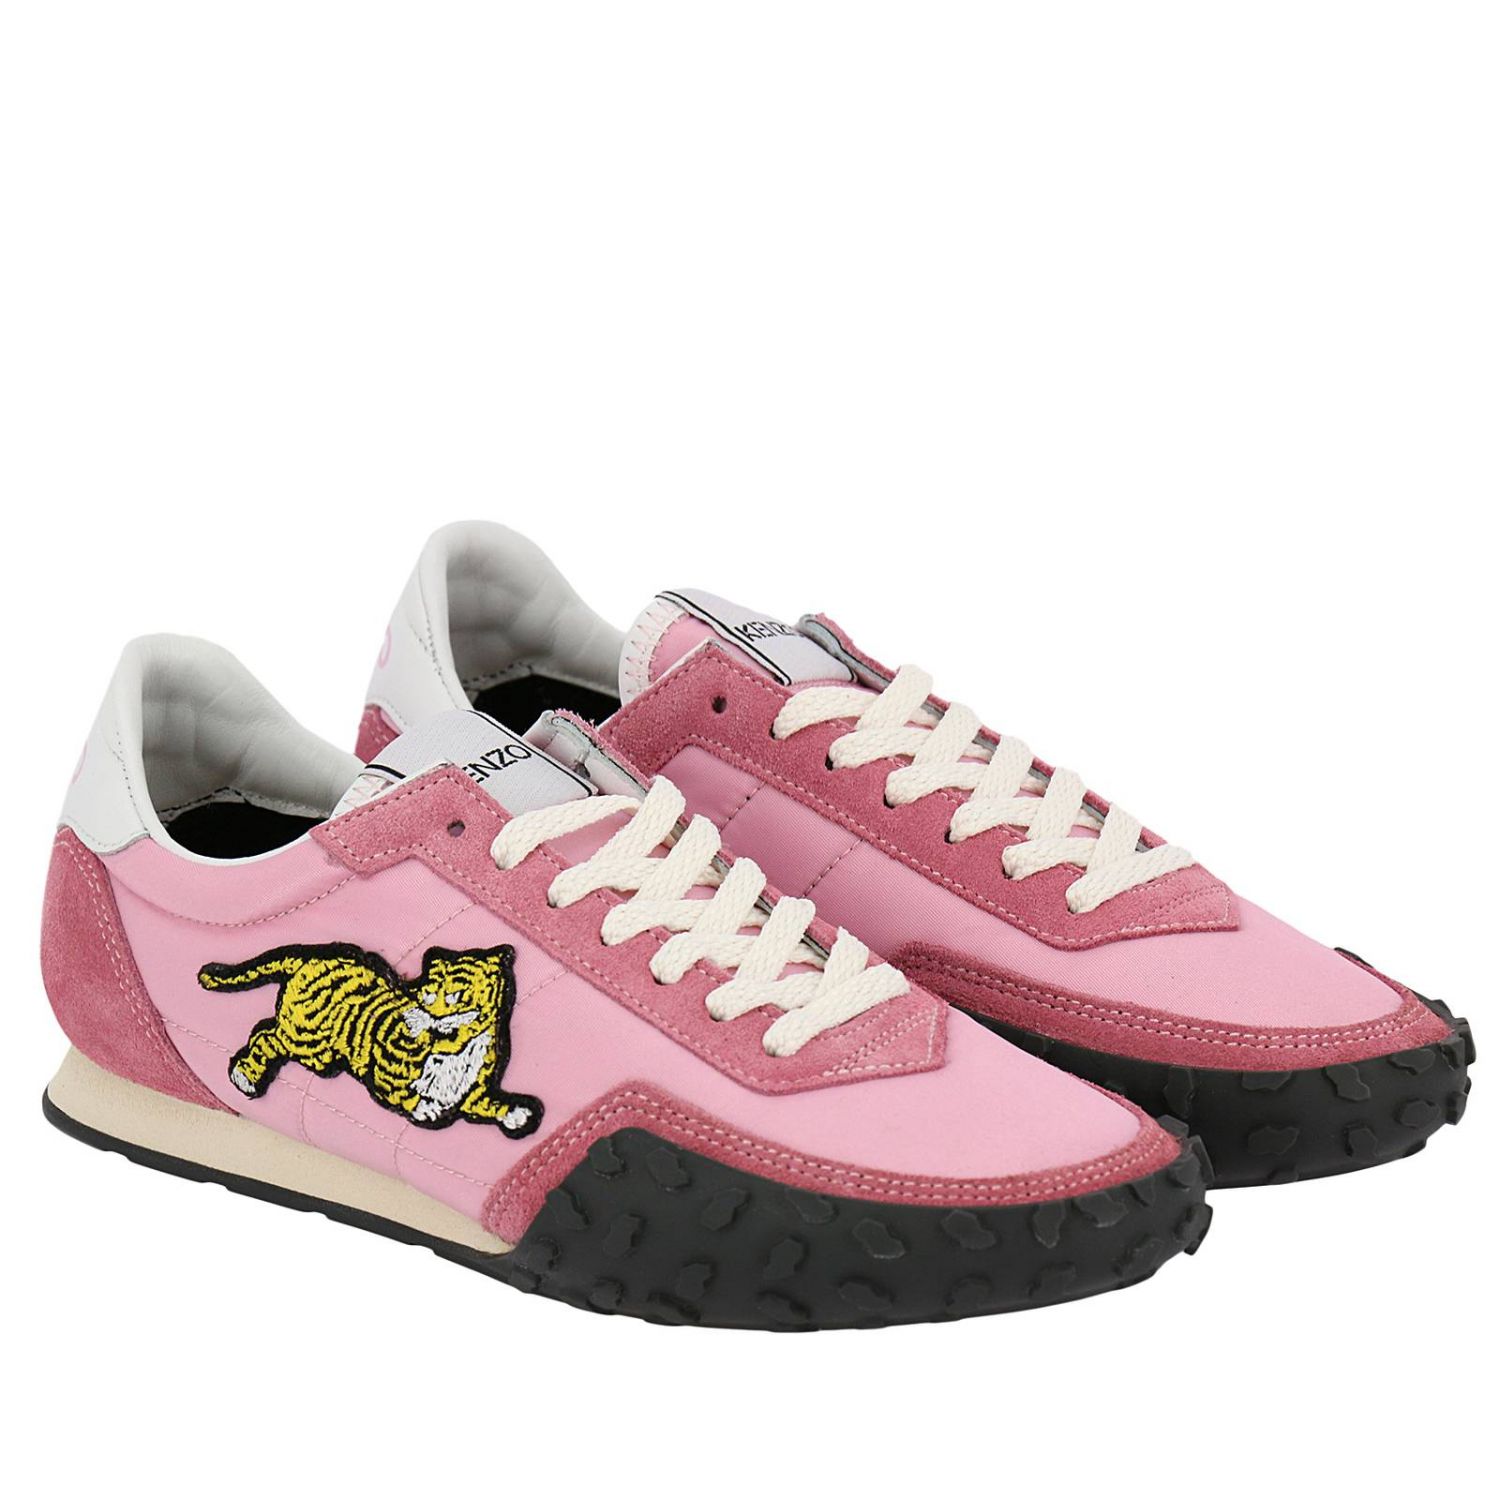 Kenzo Outlet: Sneakers women | Sneakers Kenzo Women Pink | Sneakers ...